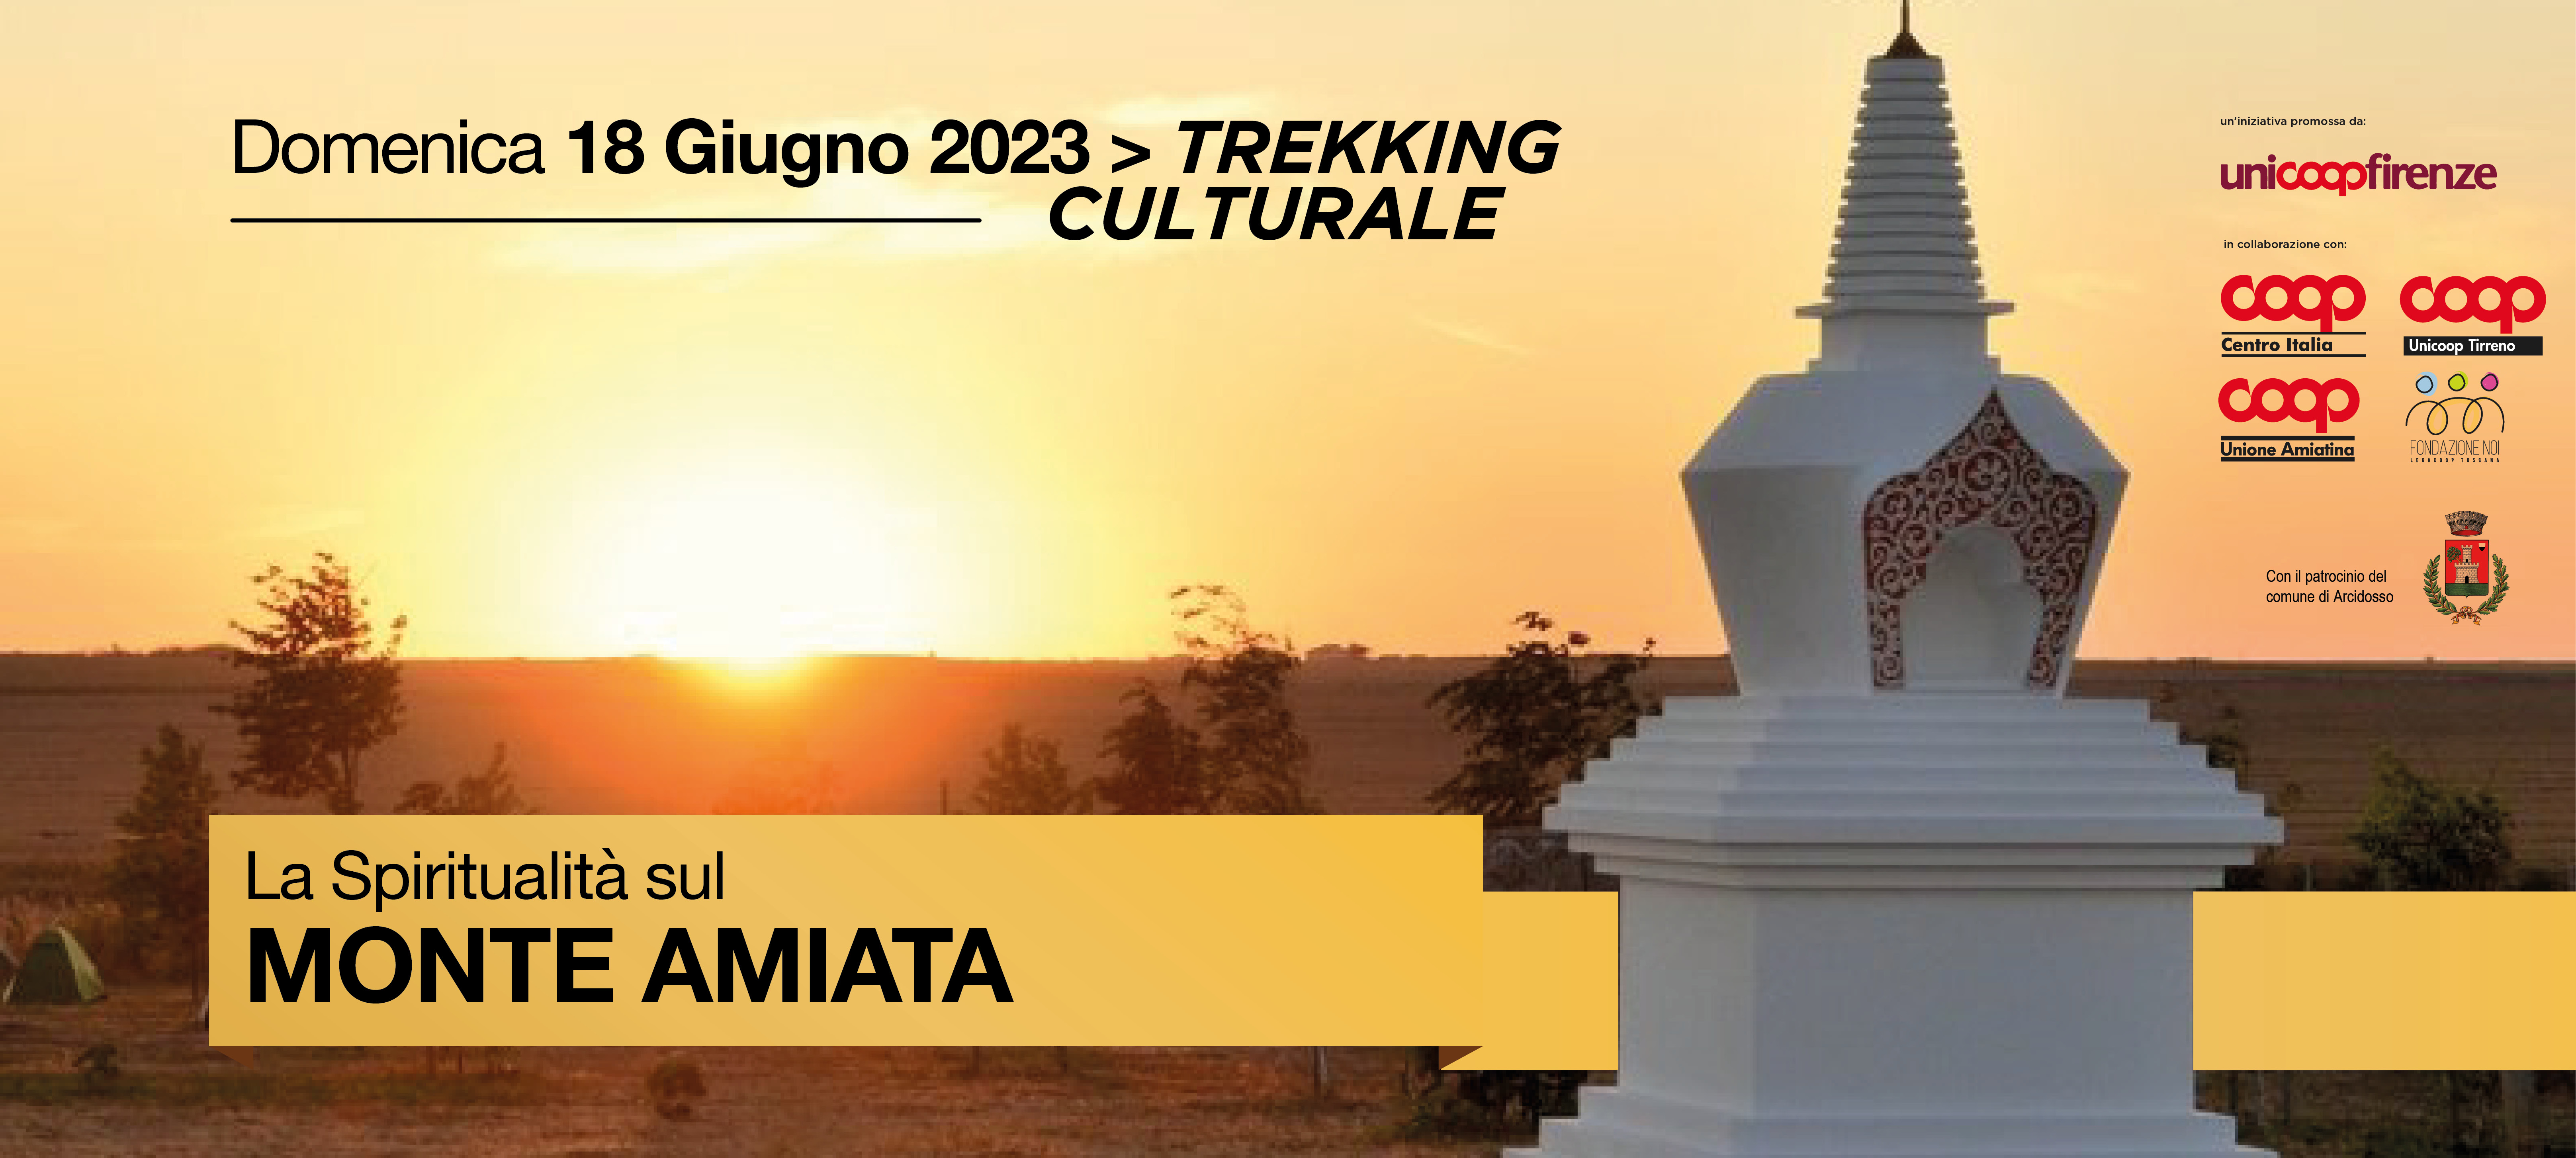 Trekking culturale “La spiritualità sul Monte Amiata”